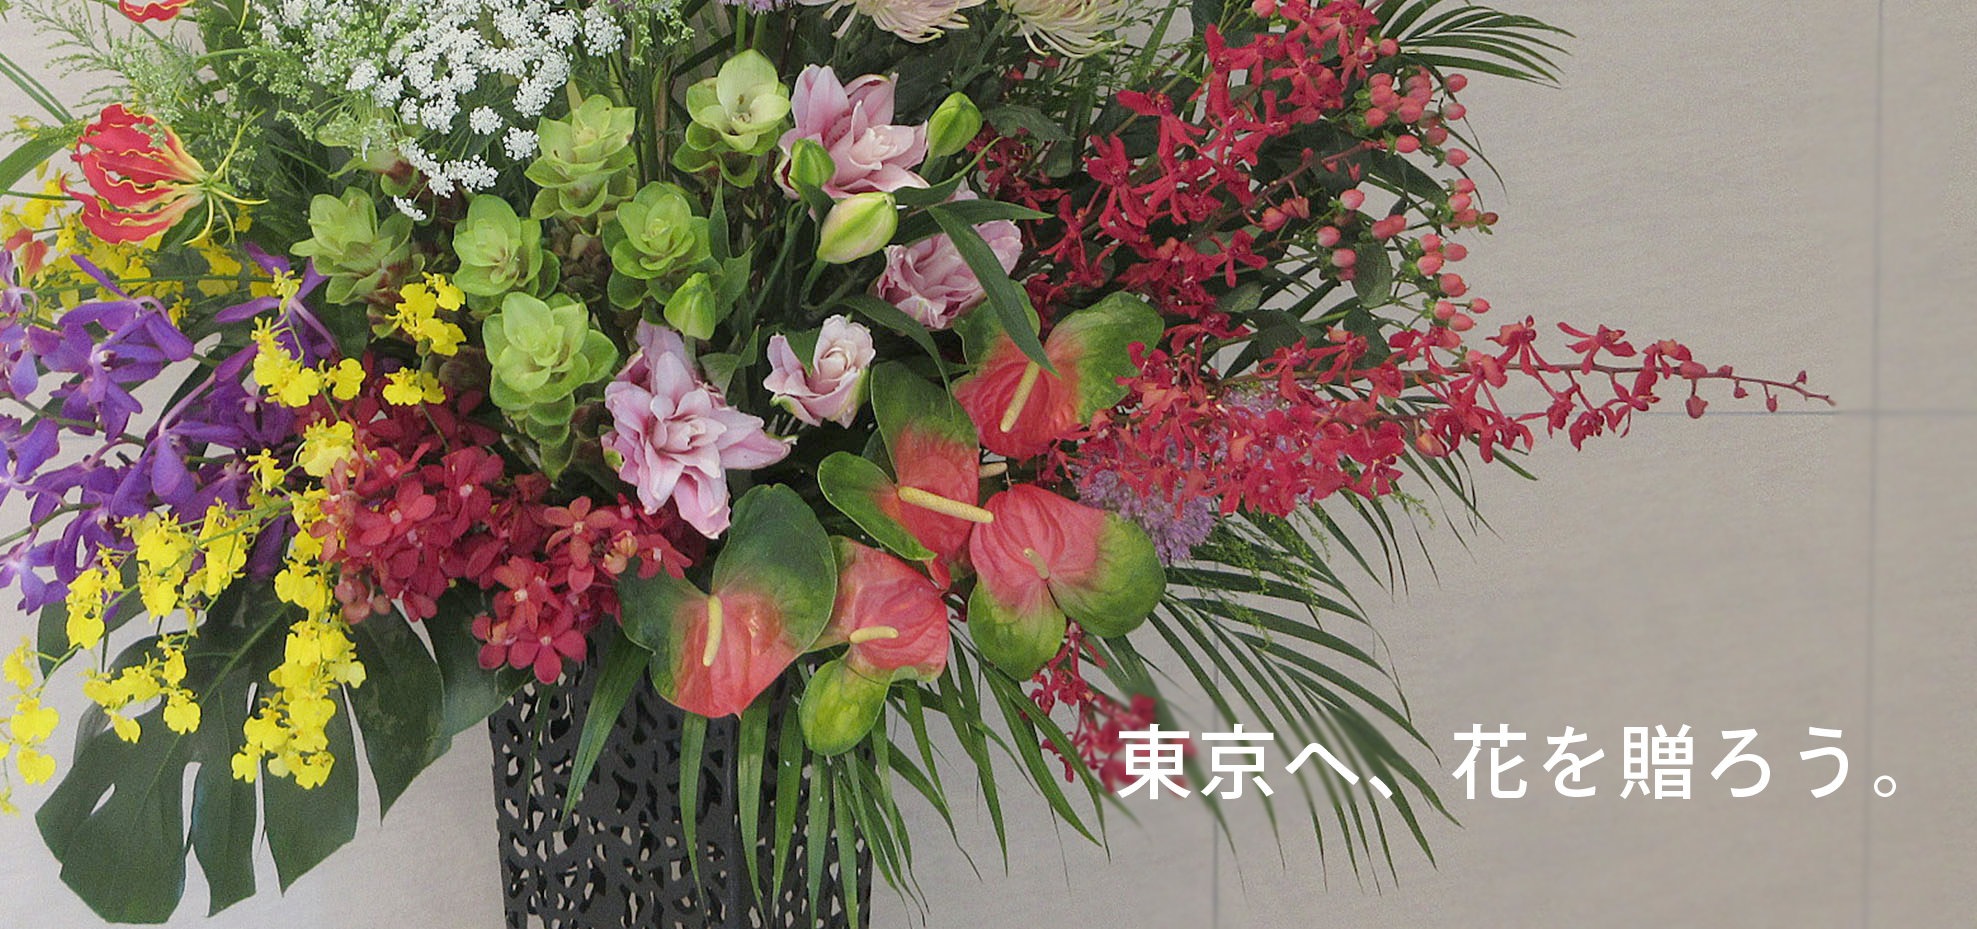 東京祝花 開店 開業 移転祝いに贈るスタンド花 胡蝶蘭 観葉植物 開店祝い 開業祝い リニューアル